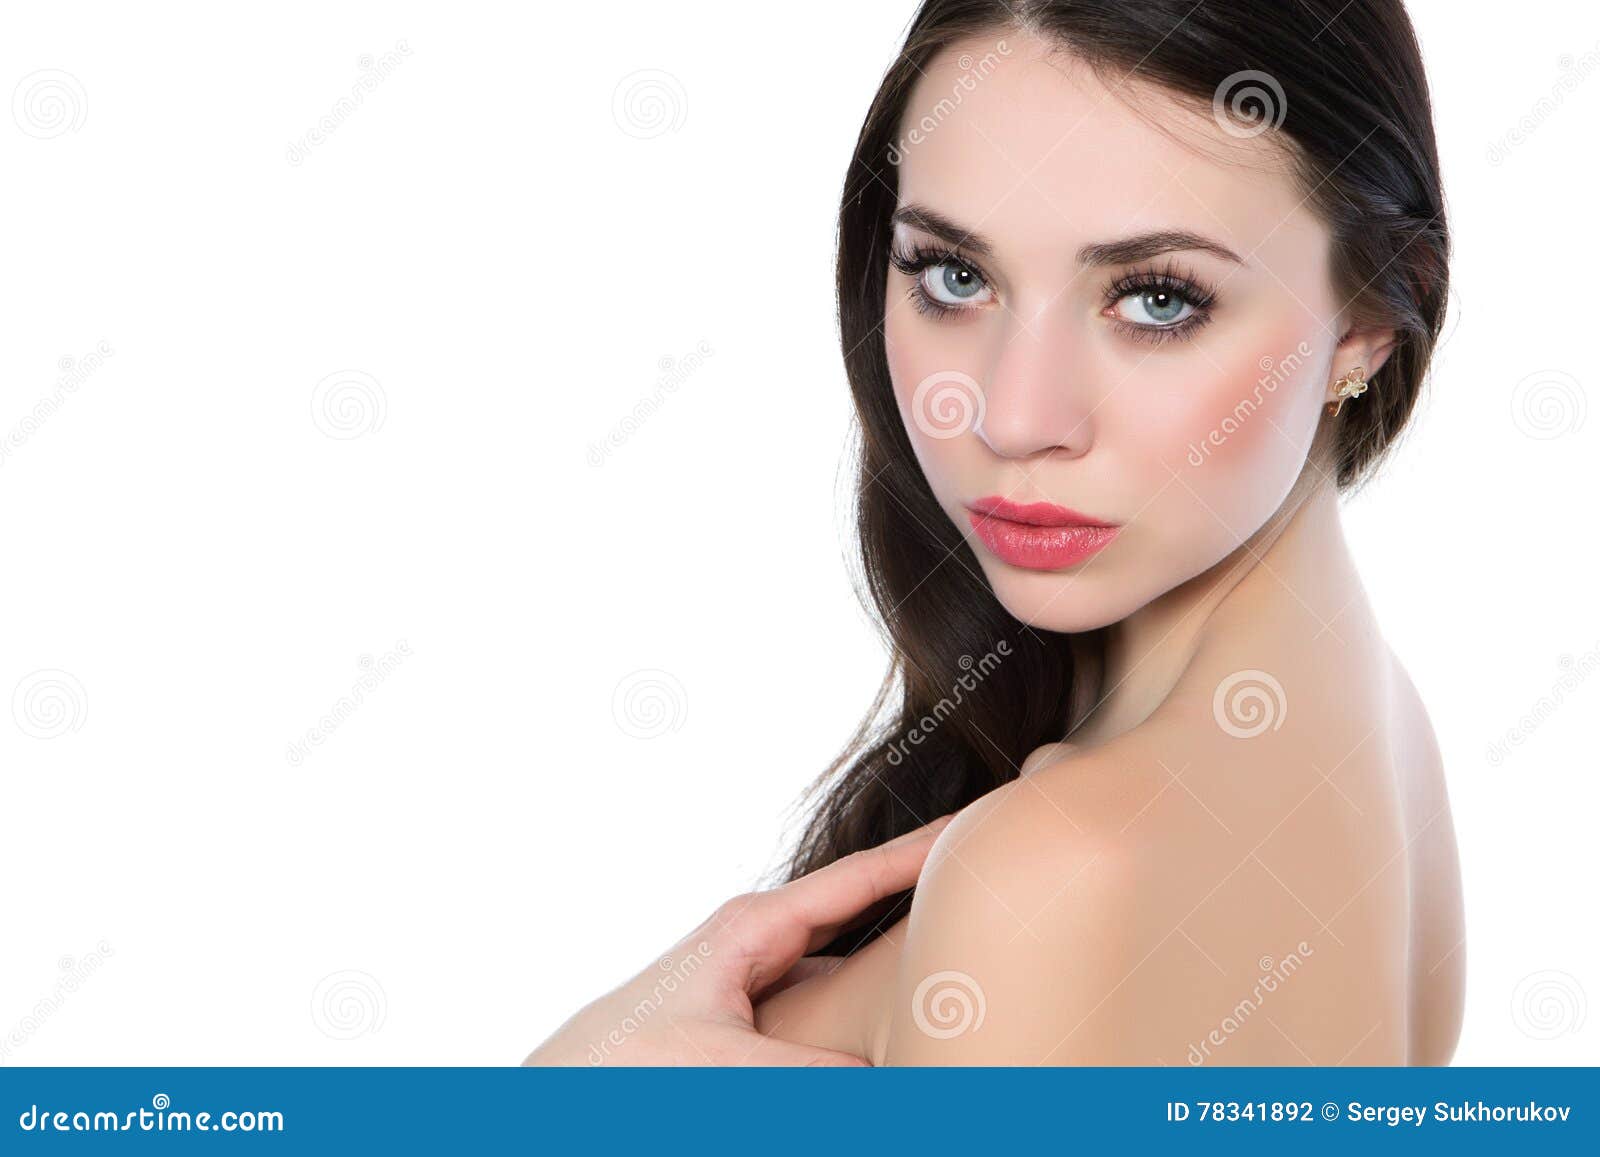 摆在与闭合的眼睛的赤裸美女特写镜头 库存照片. 图片 包括有 女孩, 华美, 肩膀, 敬慕, 卷曲, 发型 - 138543020